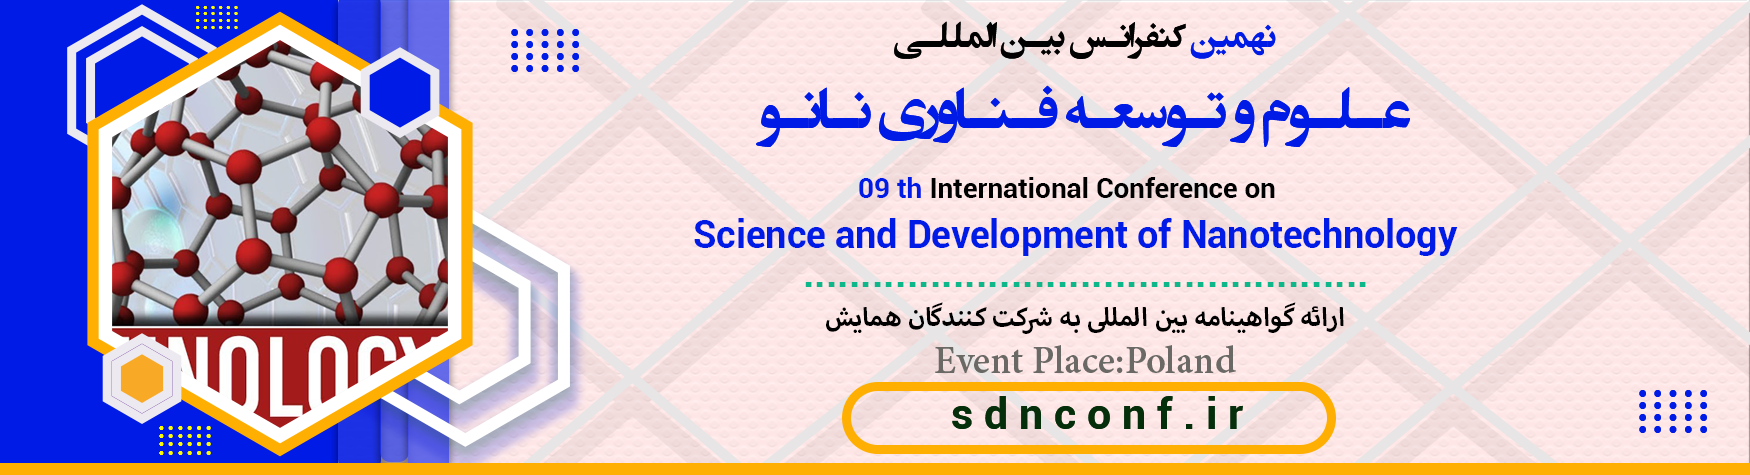 کنفرانس بین المللی علوم و توسعه فناوری نانو	